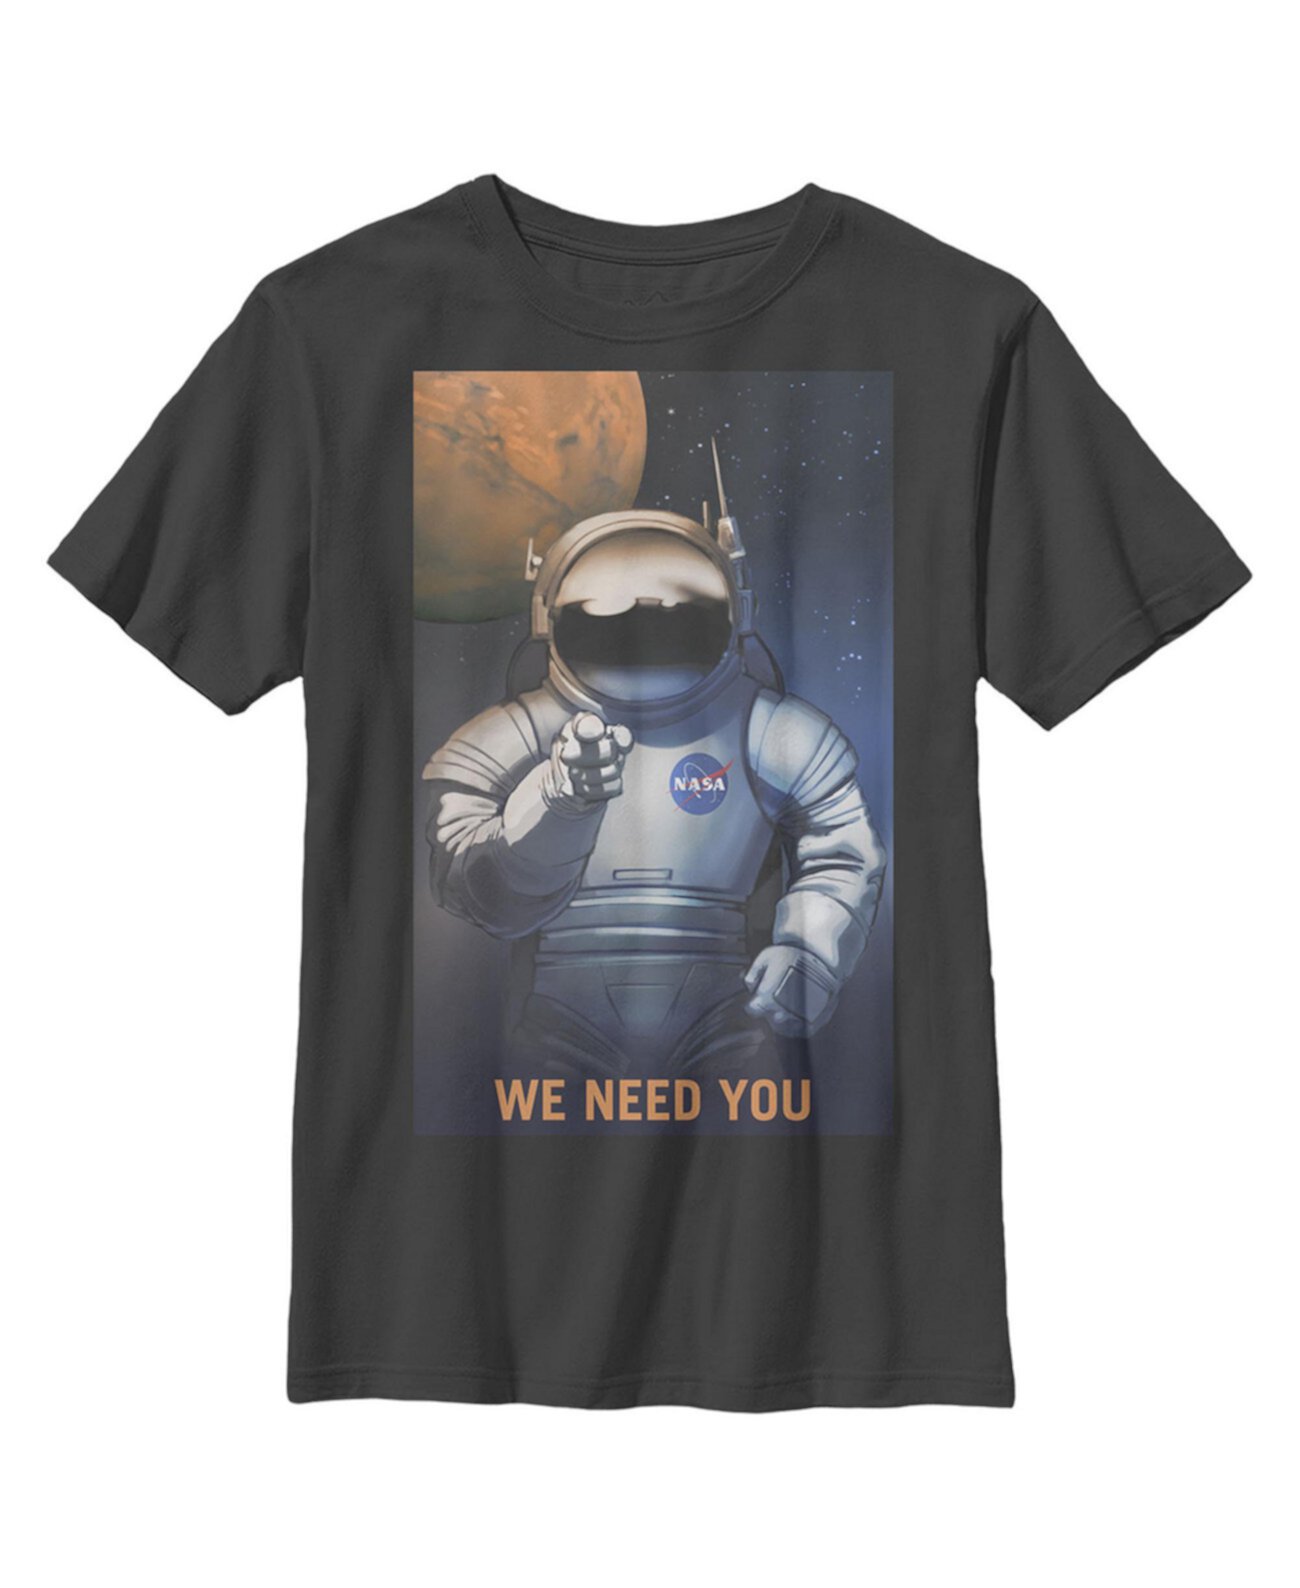 Детская футболка Mars Needs You для мальчиков NASA